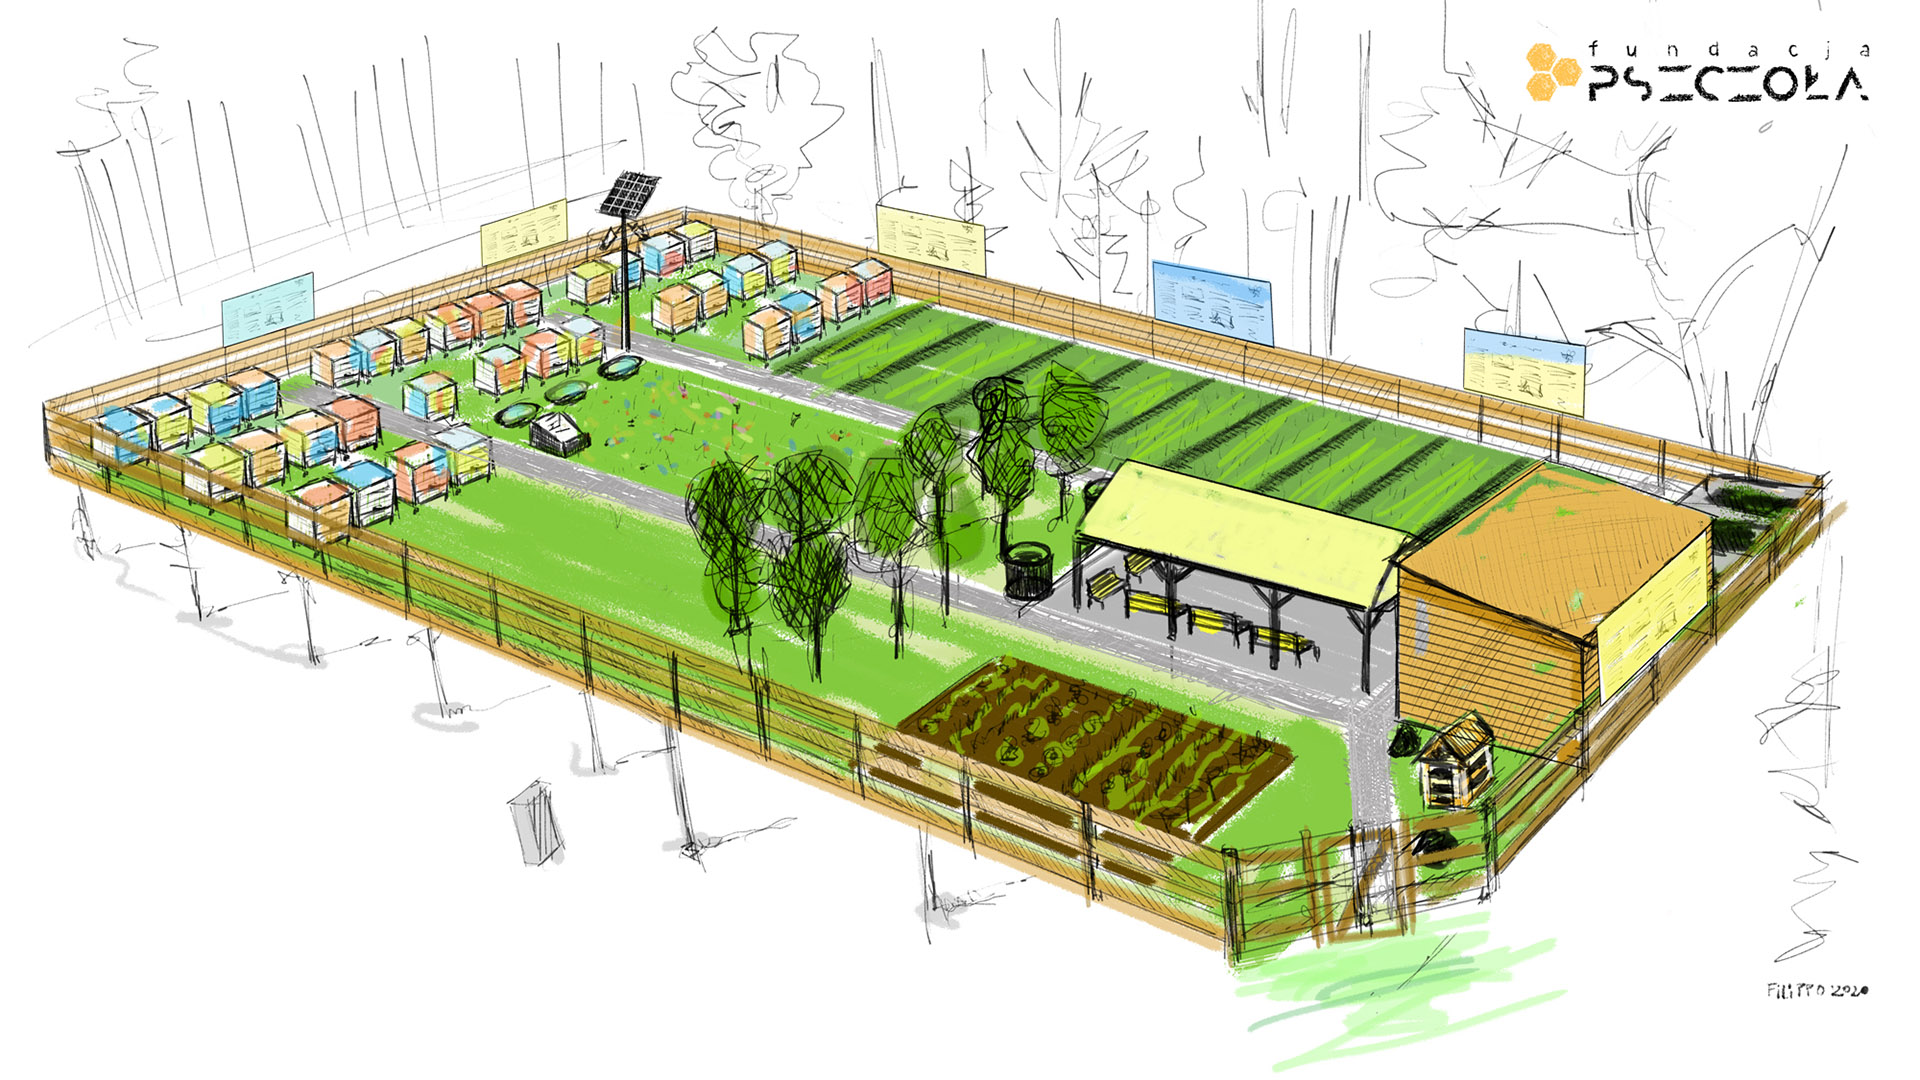 Tak będzie wyglądać Ogród i Pasieka Społeczna w Pile. Fot. Fundacja Pszczoła